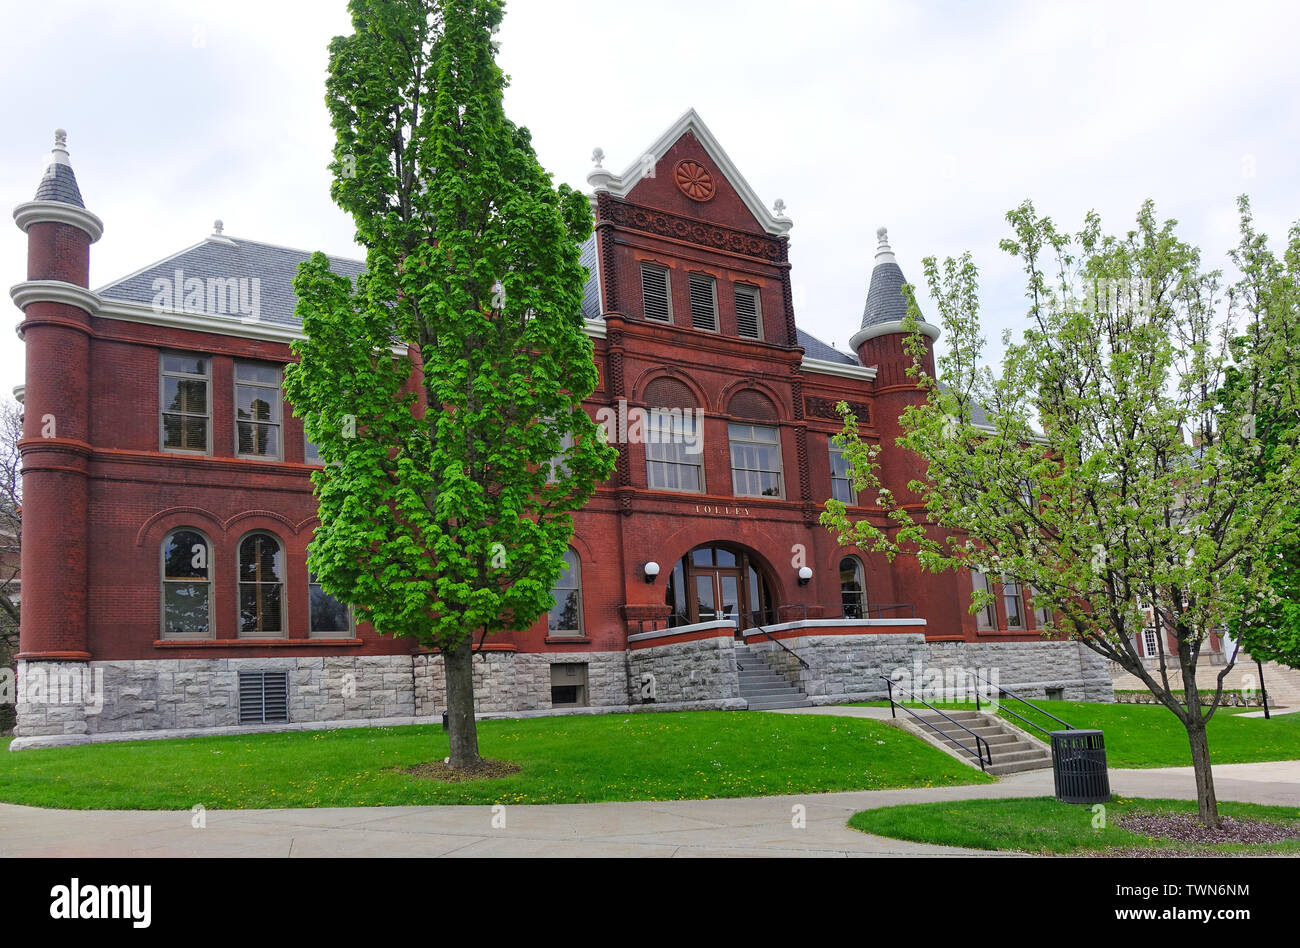 Tolley Hall, le centre de sciences humaines de l'Université de Syracuse, a l'apparence d'un vieux château Banque D'Images